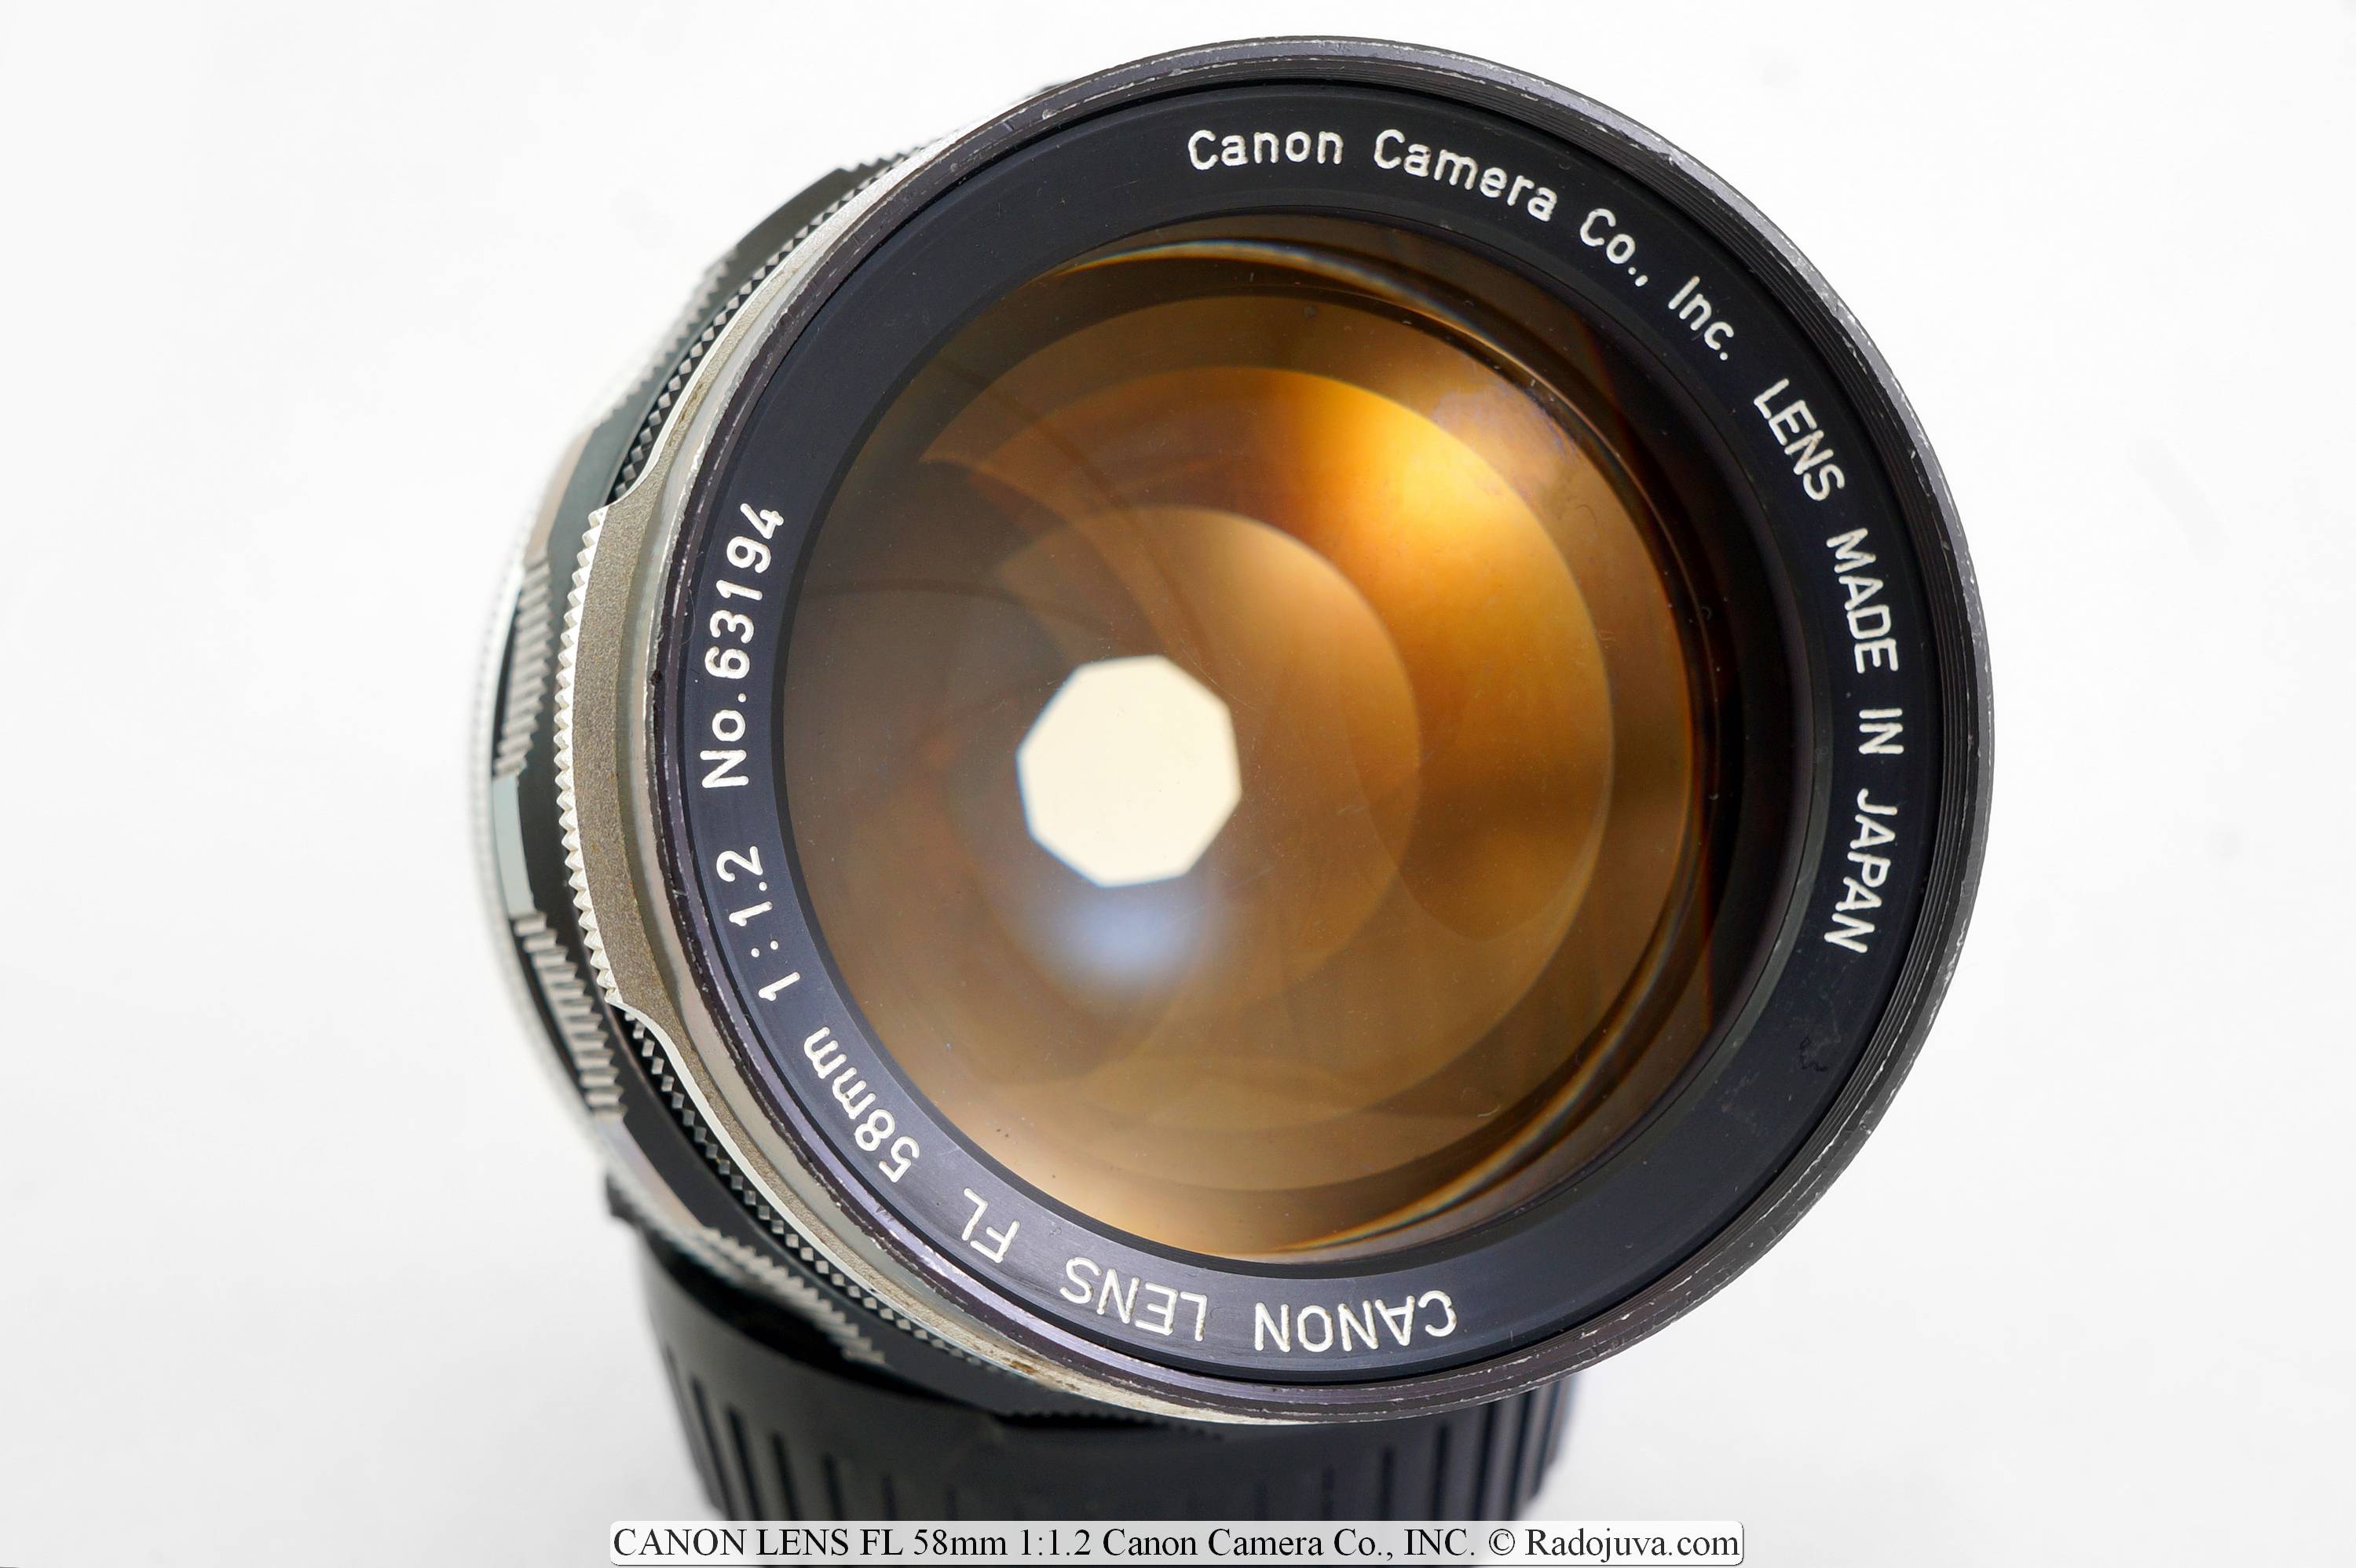 OBJETIVO CANON FL 58 mm 1:1.2 Canon Camera Co., INC.